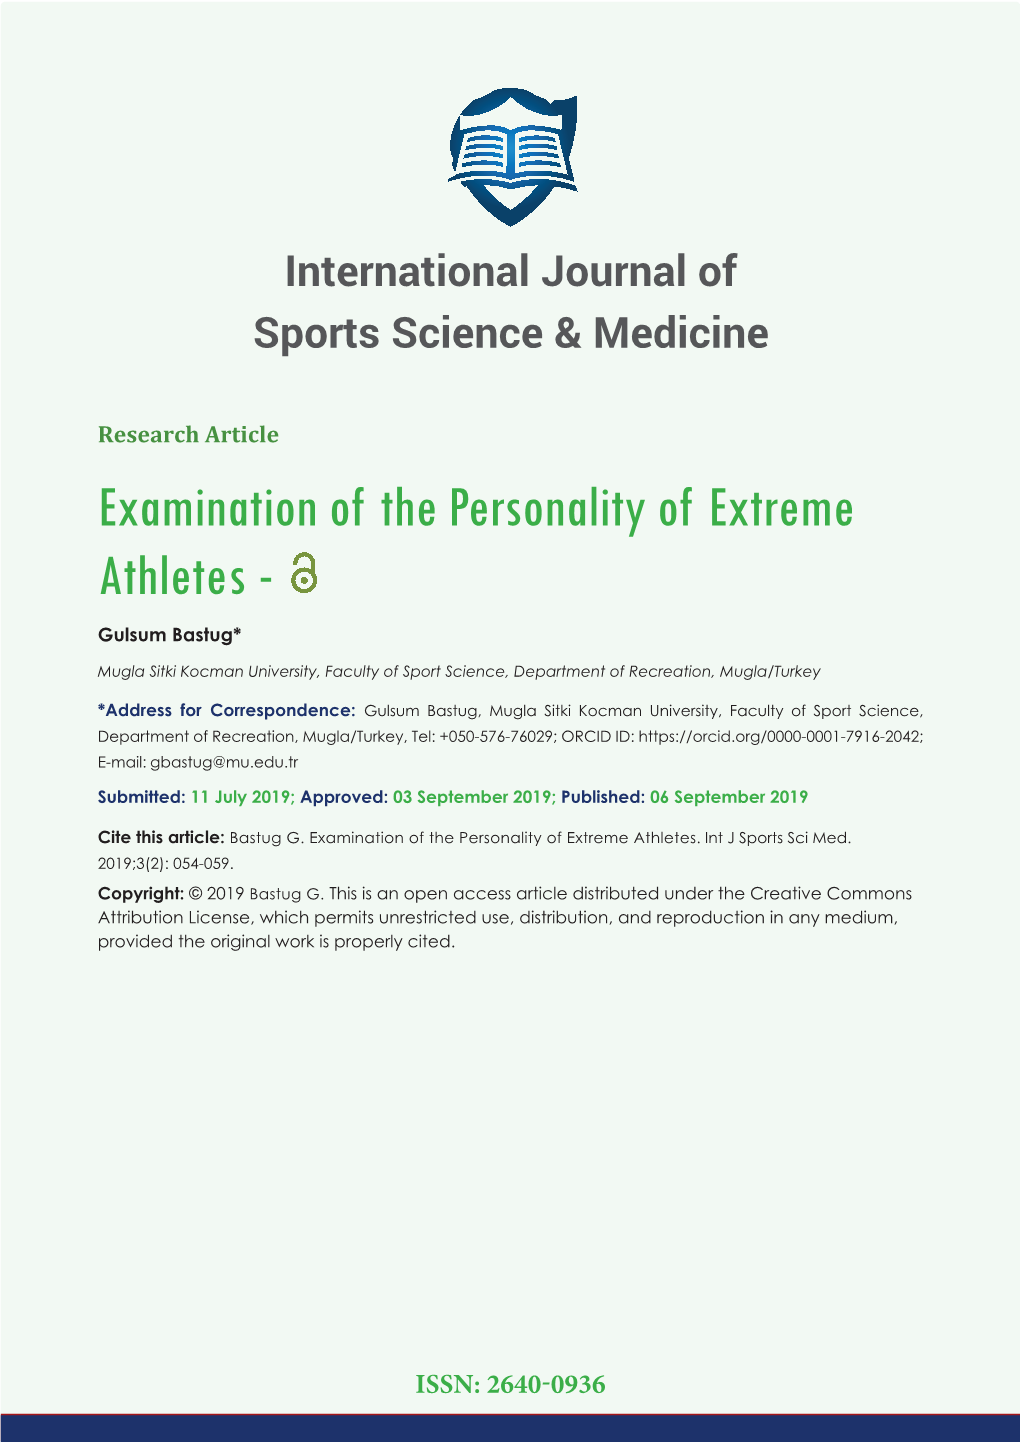 Examination of the Personality of Extreme Athletes - Gulsum Bastug*